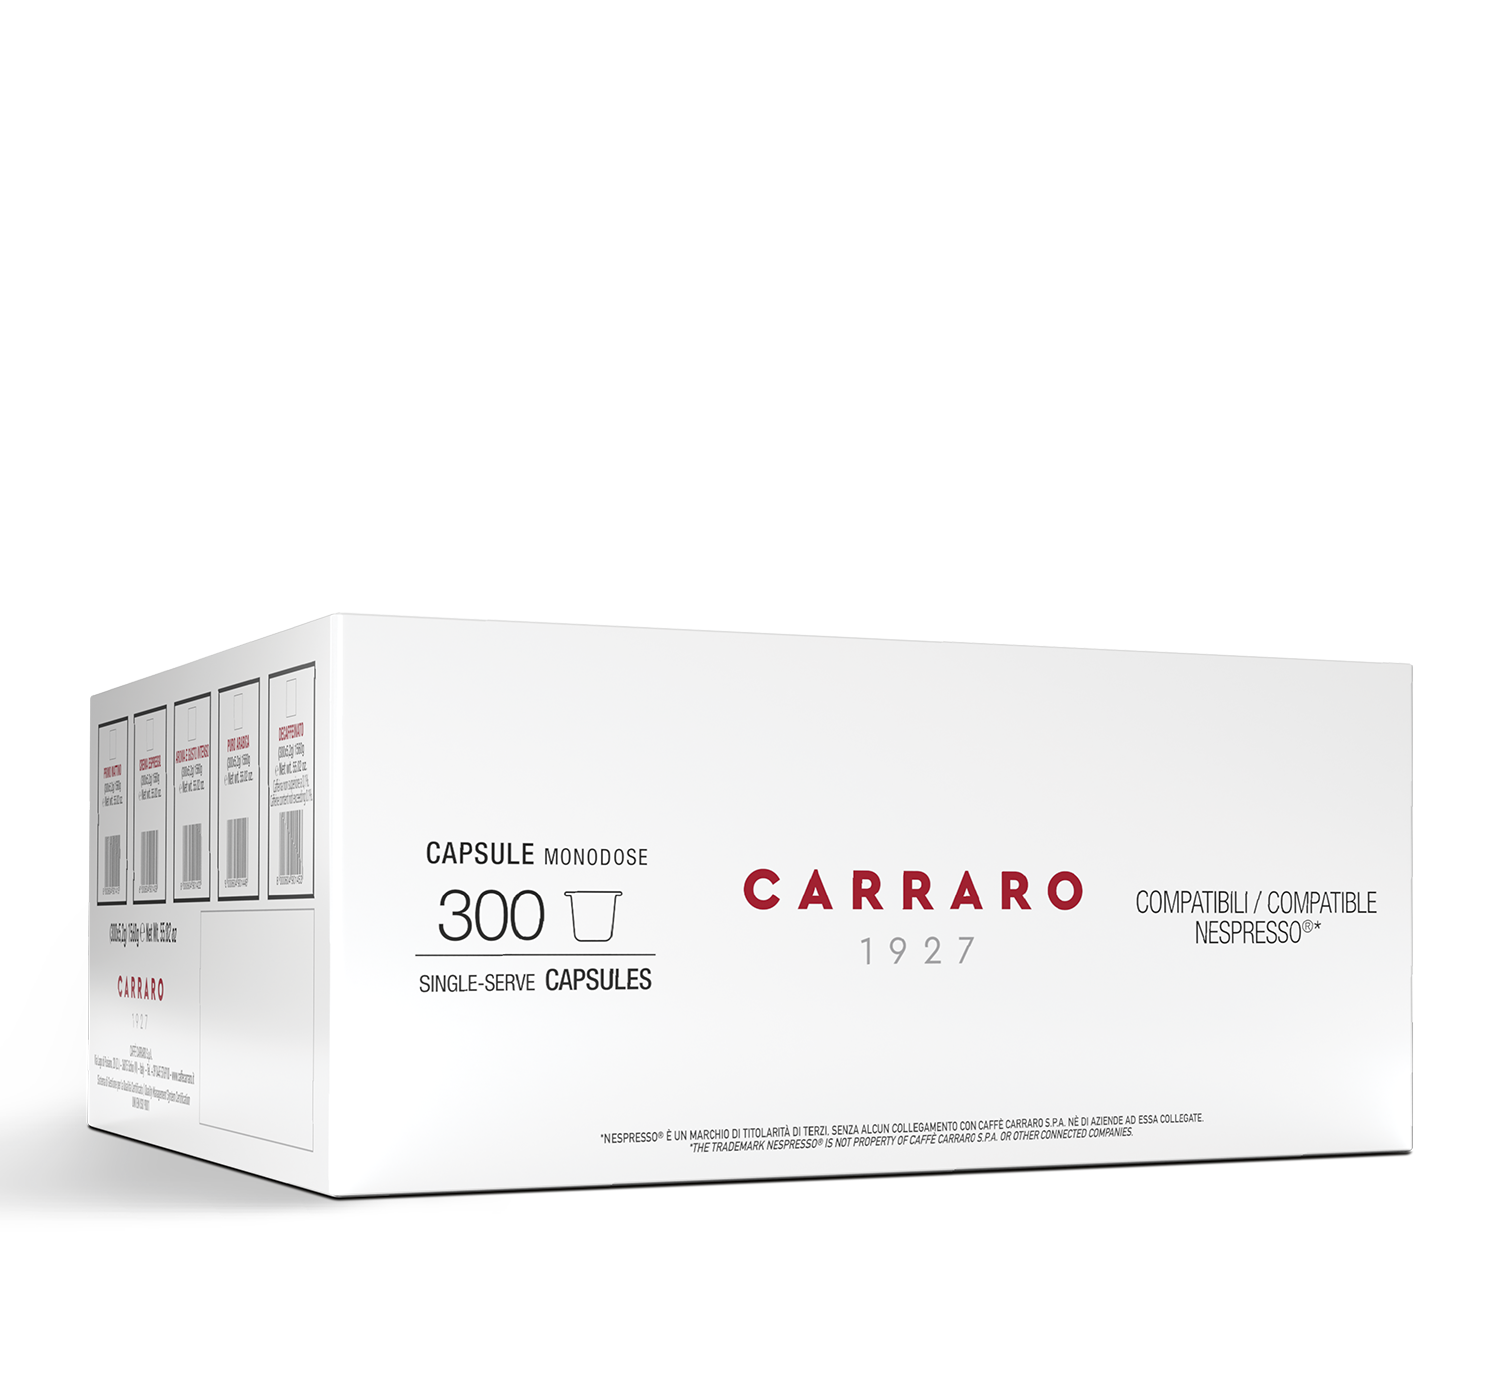 Capsules - 300 capsules  compatible Nespresso®*: Primo Mattino / Crema Espresso / Puro Arabica / Decaffeinato - Shop online Caffè Carraro